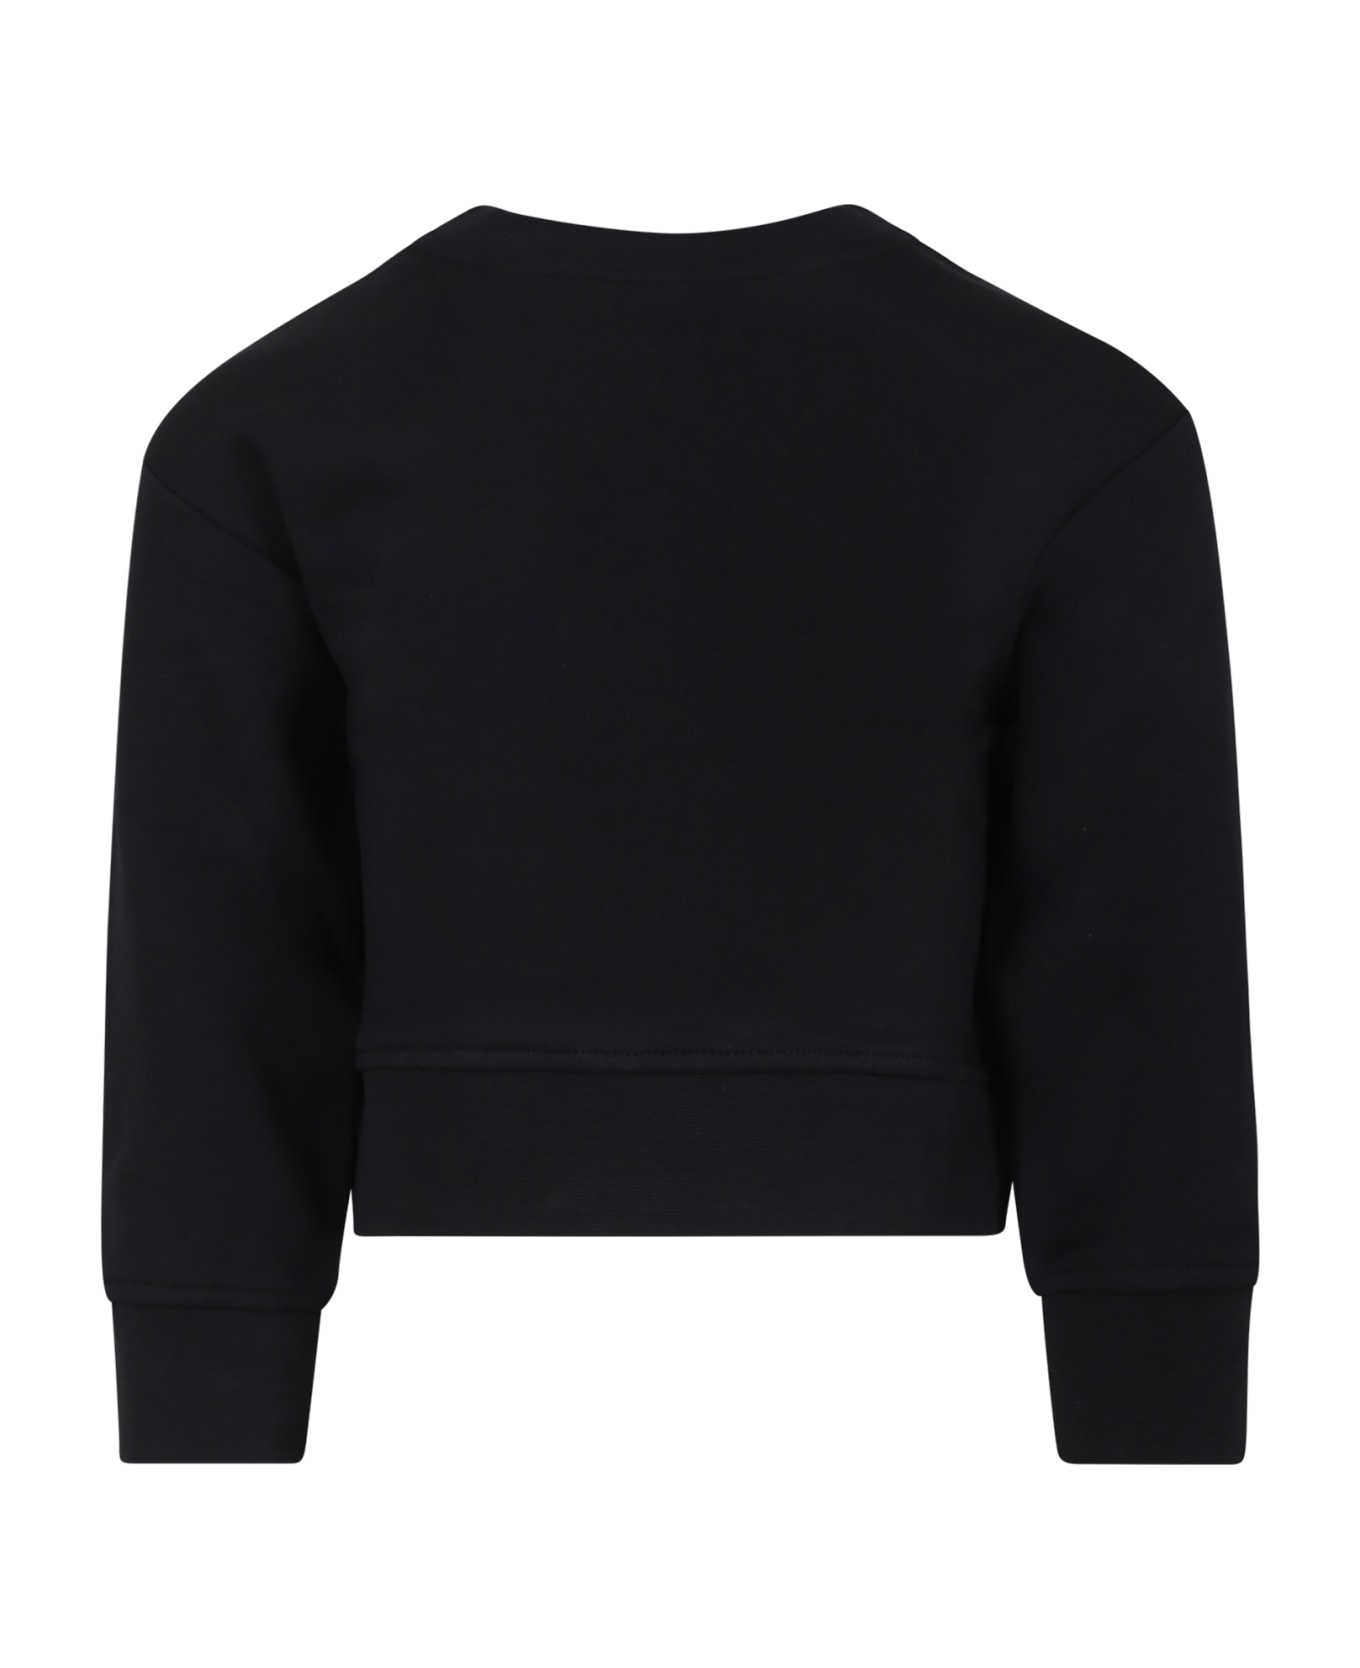 Stella McCartney Kids Black Sweatshirt For Girl With Print And Logo - Black ニットウェア＆スウェットシャツ